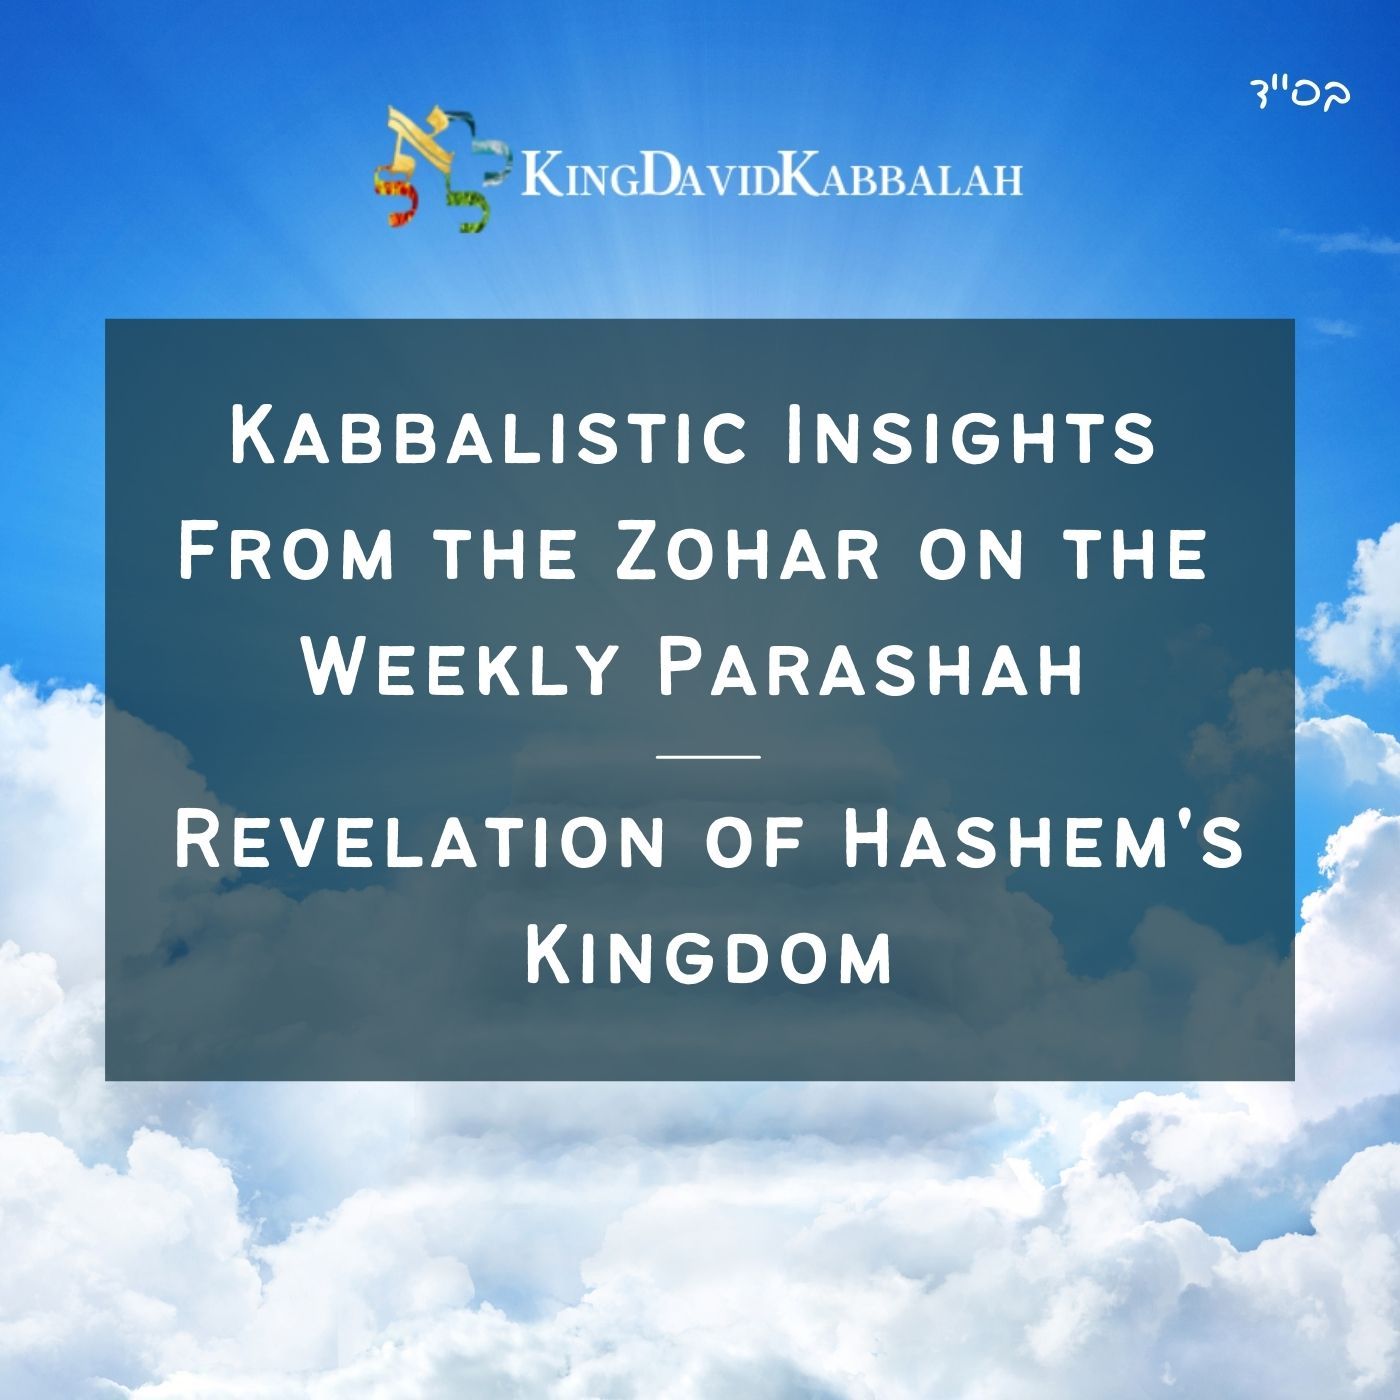 Kabbalistic Inspiration on the Parasha from the Zohar - Revelation of Hashem's Kingdom